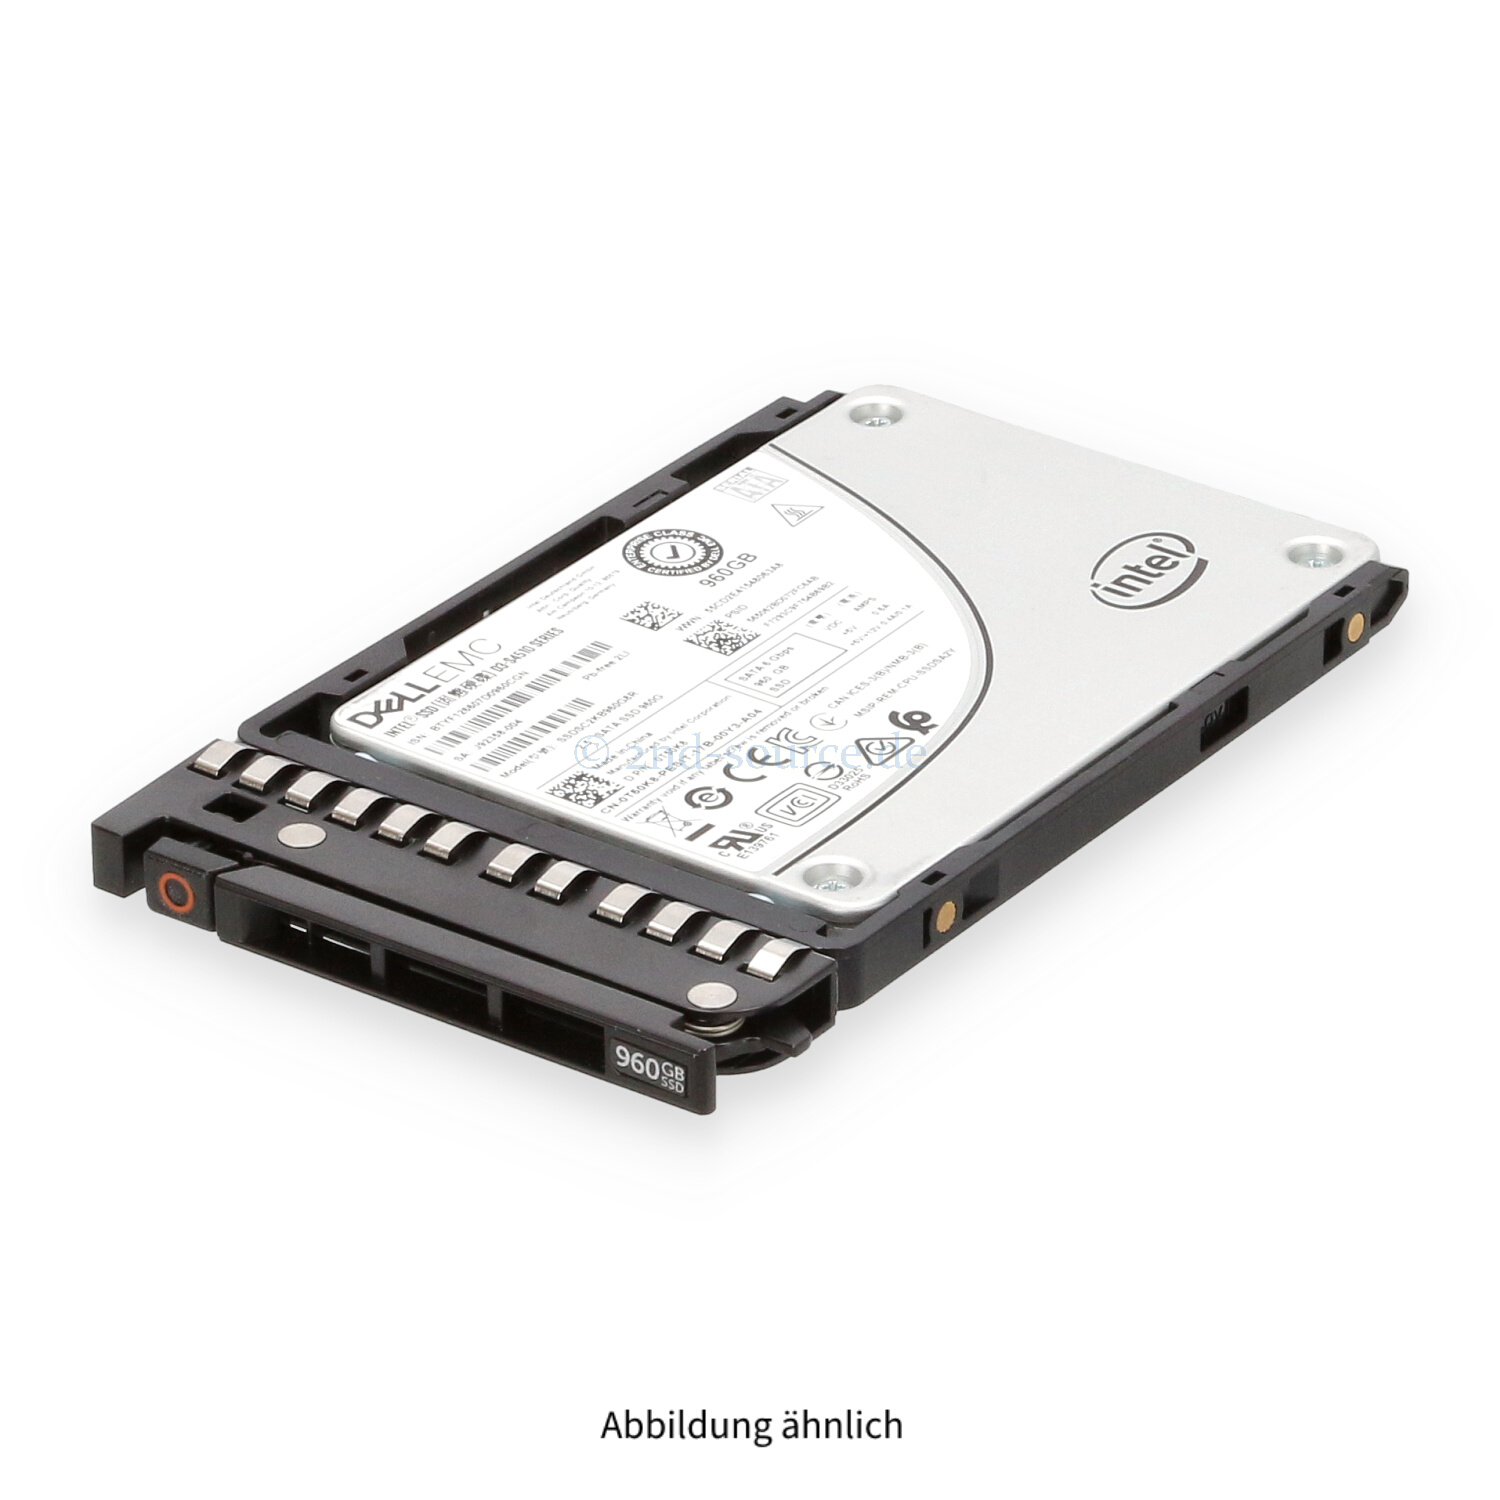 Dell 960GB SATA 6G SFF Read Intensive HotPlug SSD T50K8 0T50K8